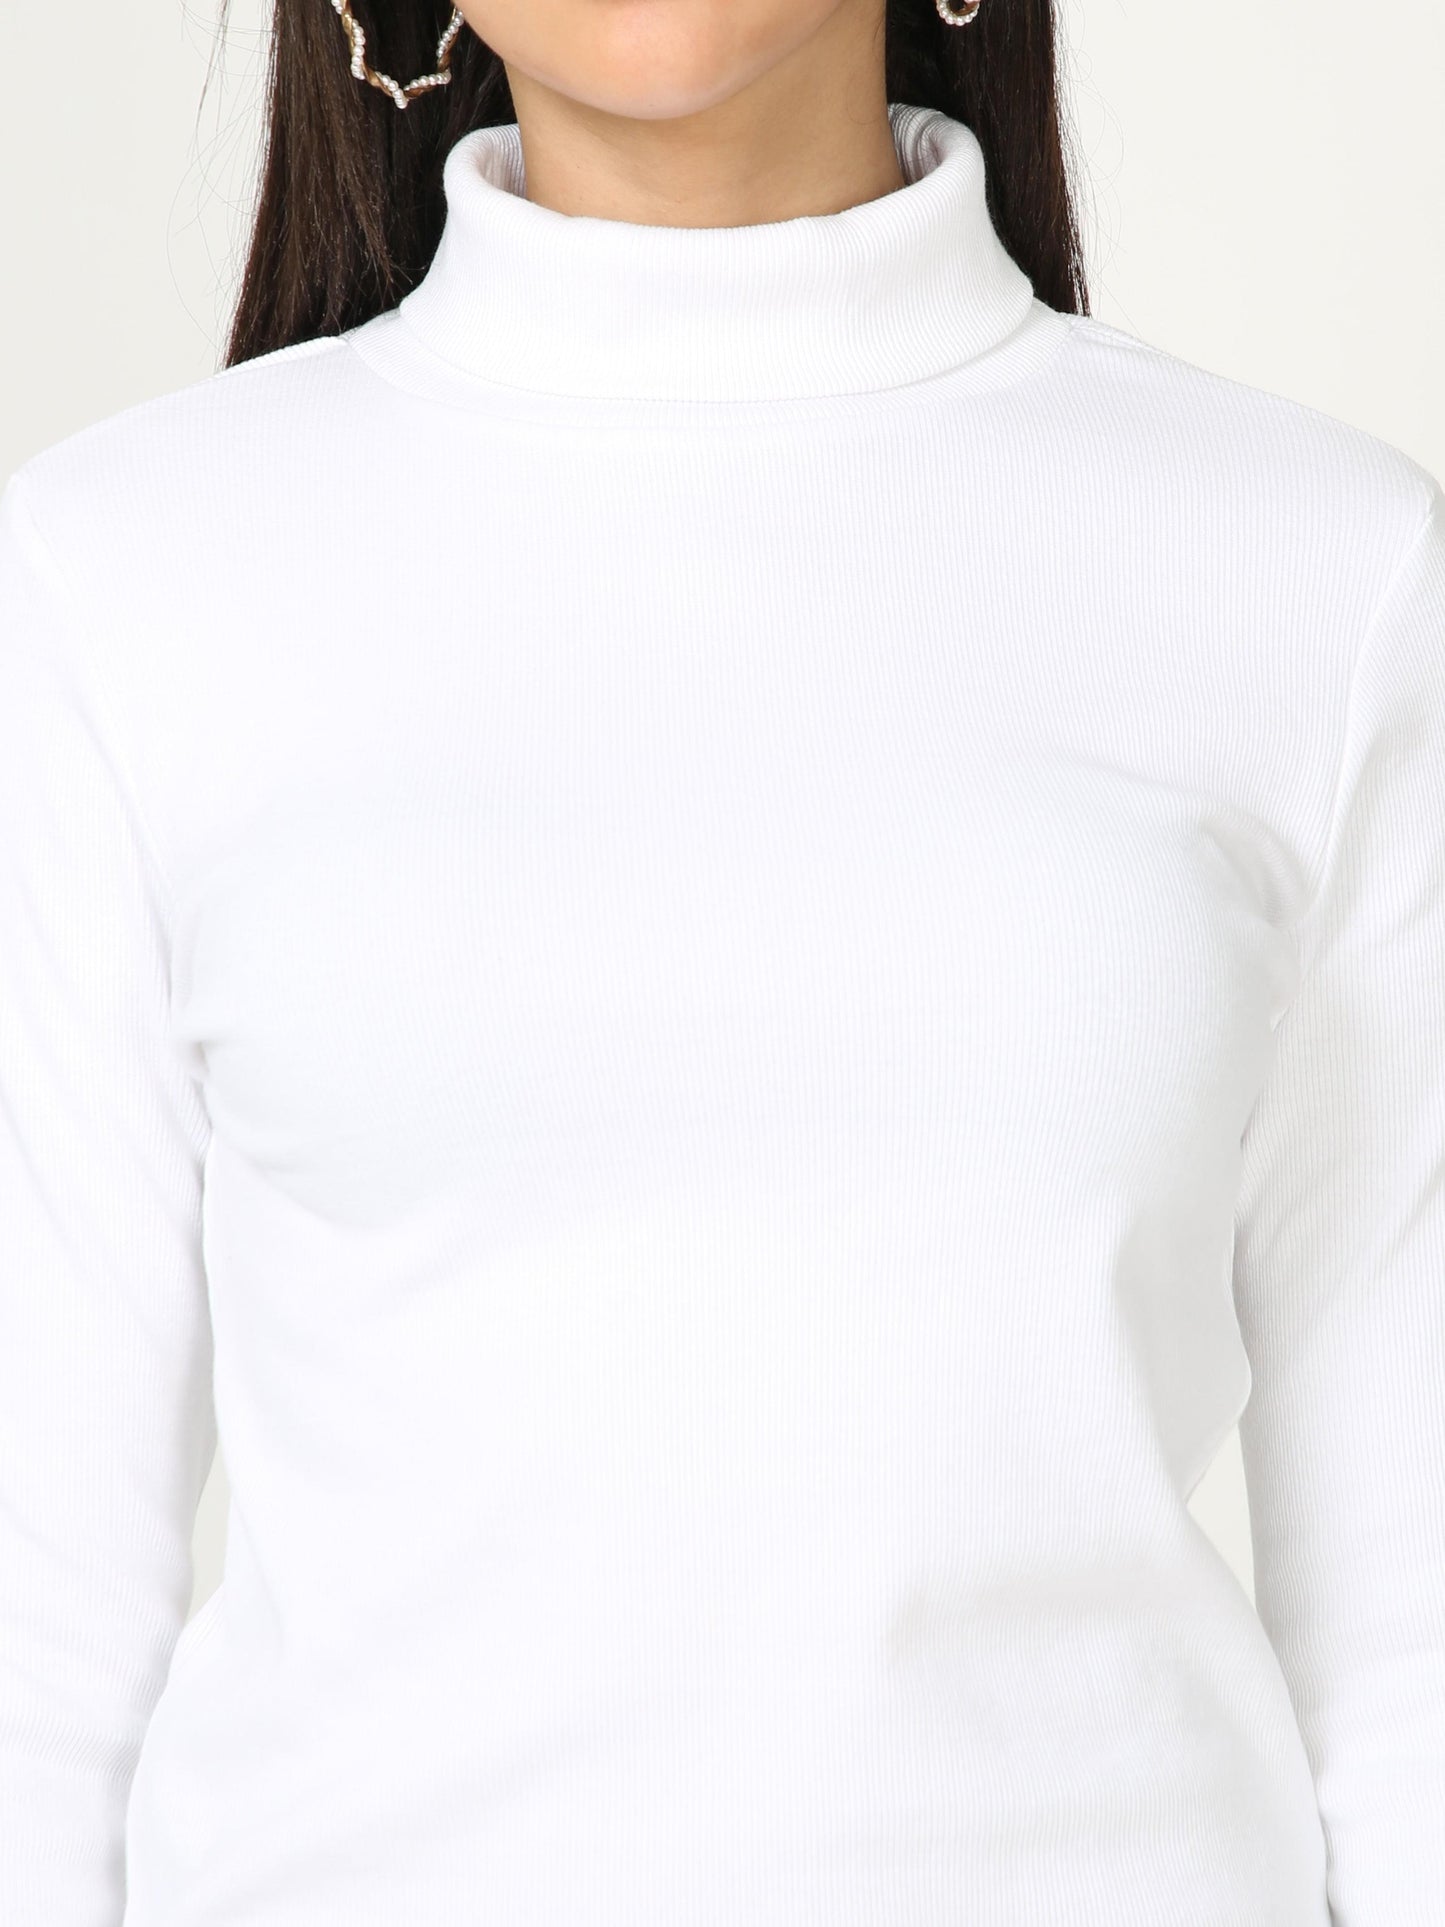 High Neck Full Sleeve Women's T-Shirt - White